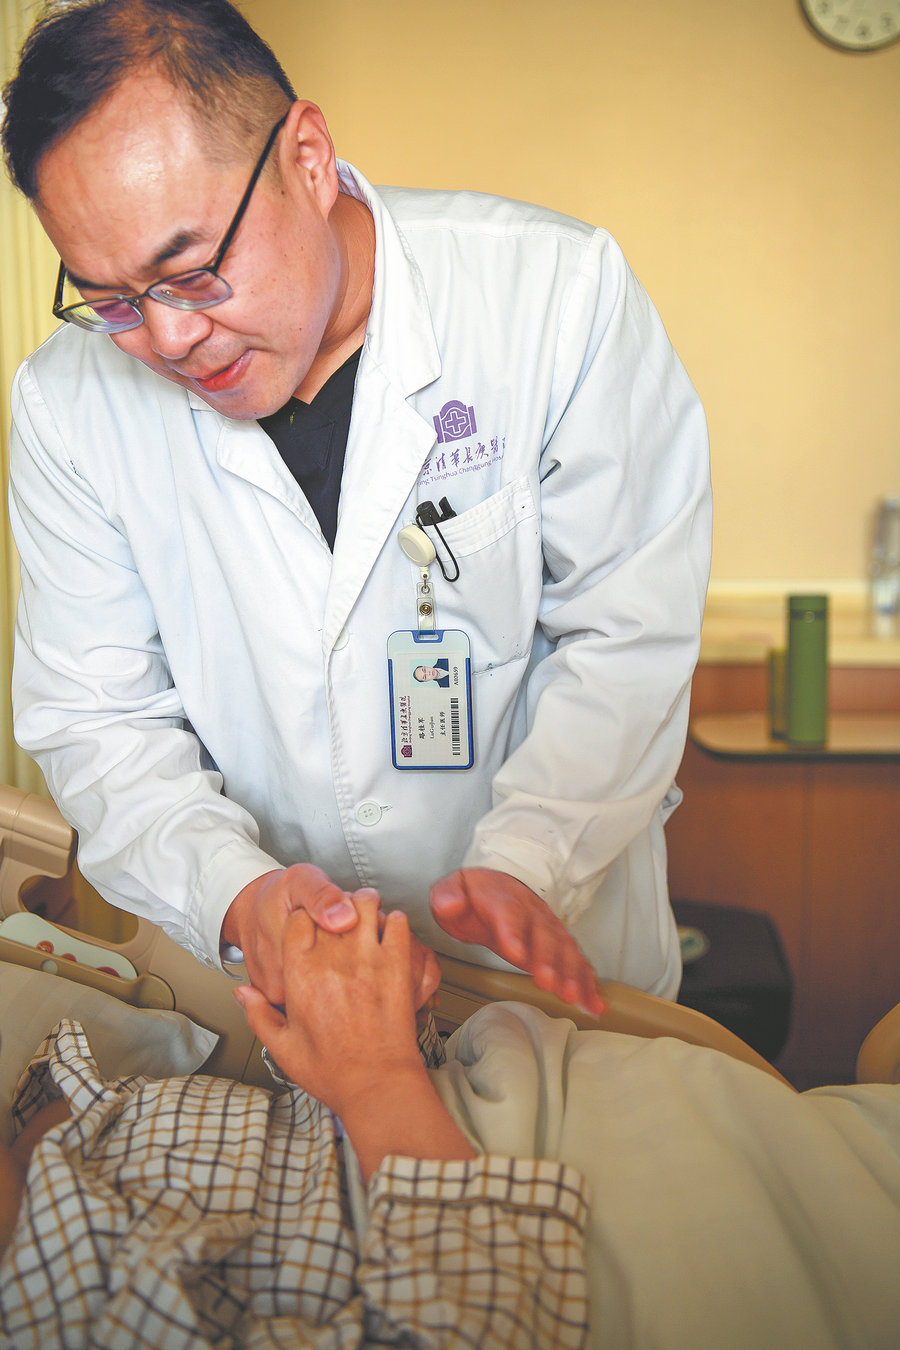 Ένας γιατρός συνομιλεί με έναν ασθενή που κρατά το χέρι του στο νοσοκομείο Τσινγκχουά Τσανγκούνγκ του Πεκίνου. [Φωτογραφία από Pan Songgang/Sun Ren/For China Daily]